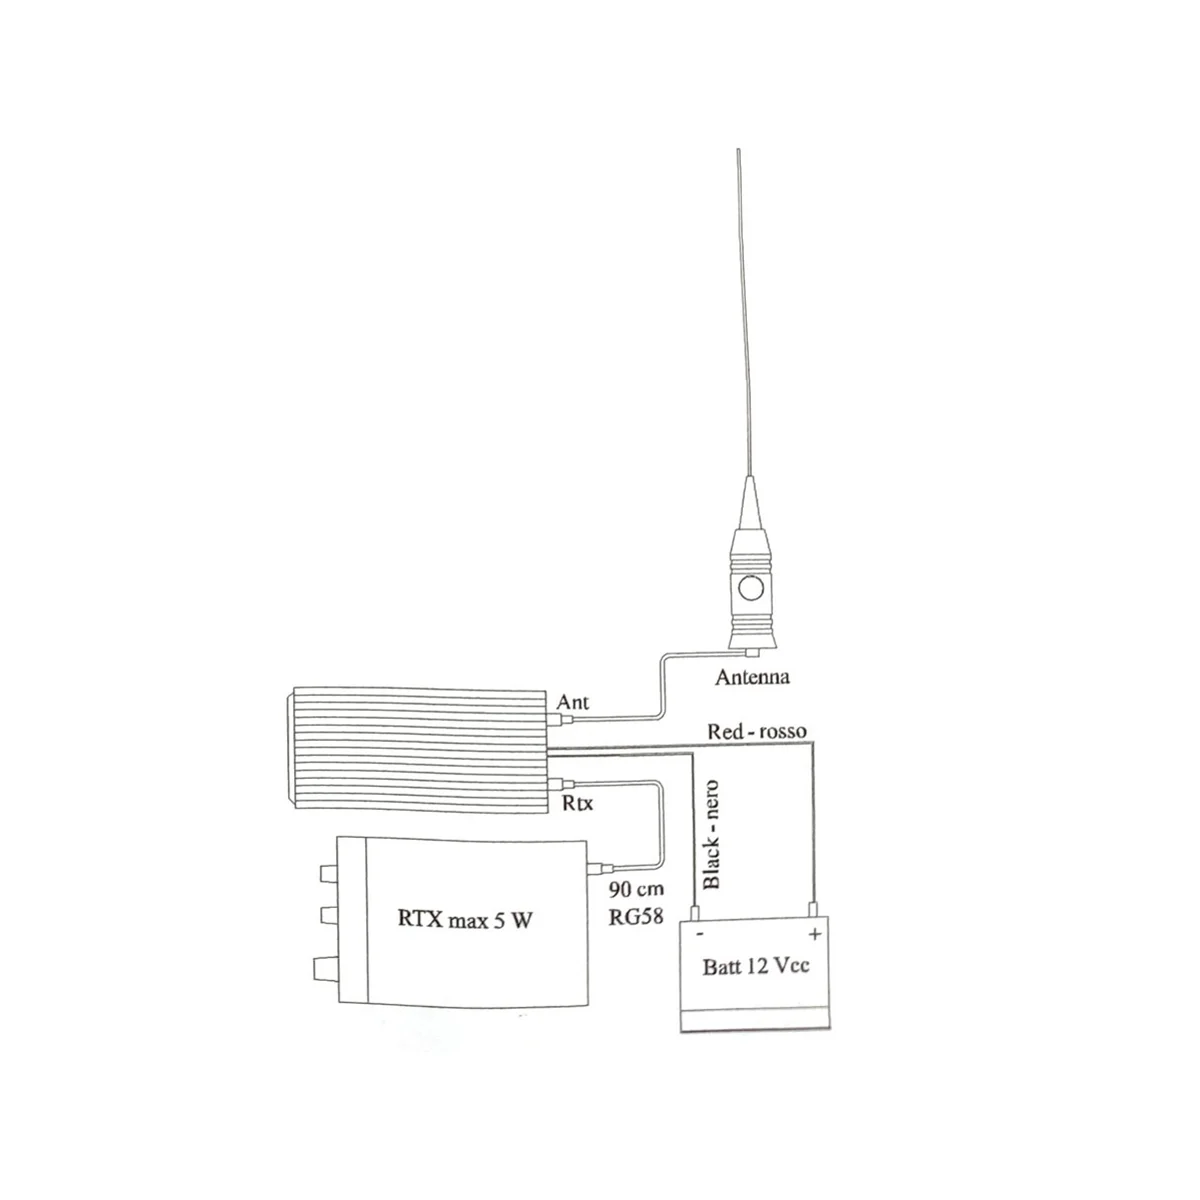 CB Усилитель мощности радио BJ-300 PLUS КВ усилитель 3-30 МГц 100 Вт FM 150 Вт AM 300 Вт SSB Рация CB Усилитель BJ300 PLUS - 4